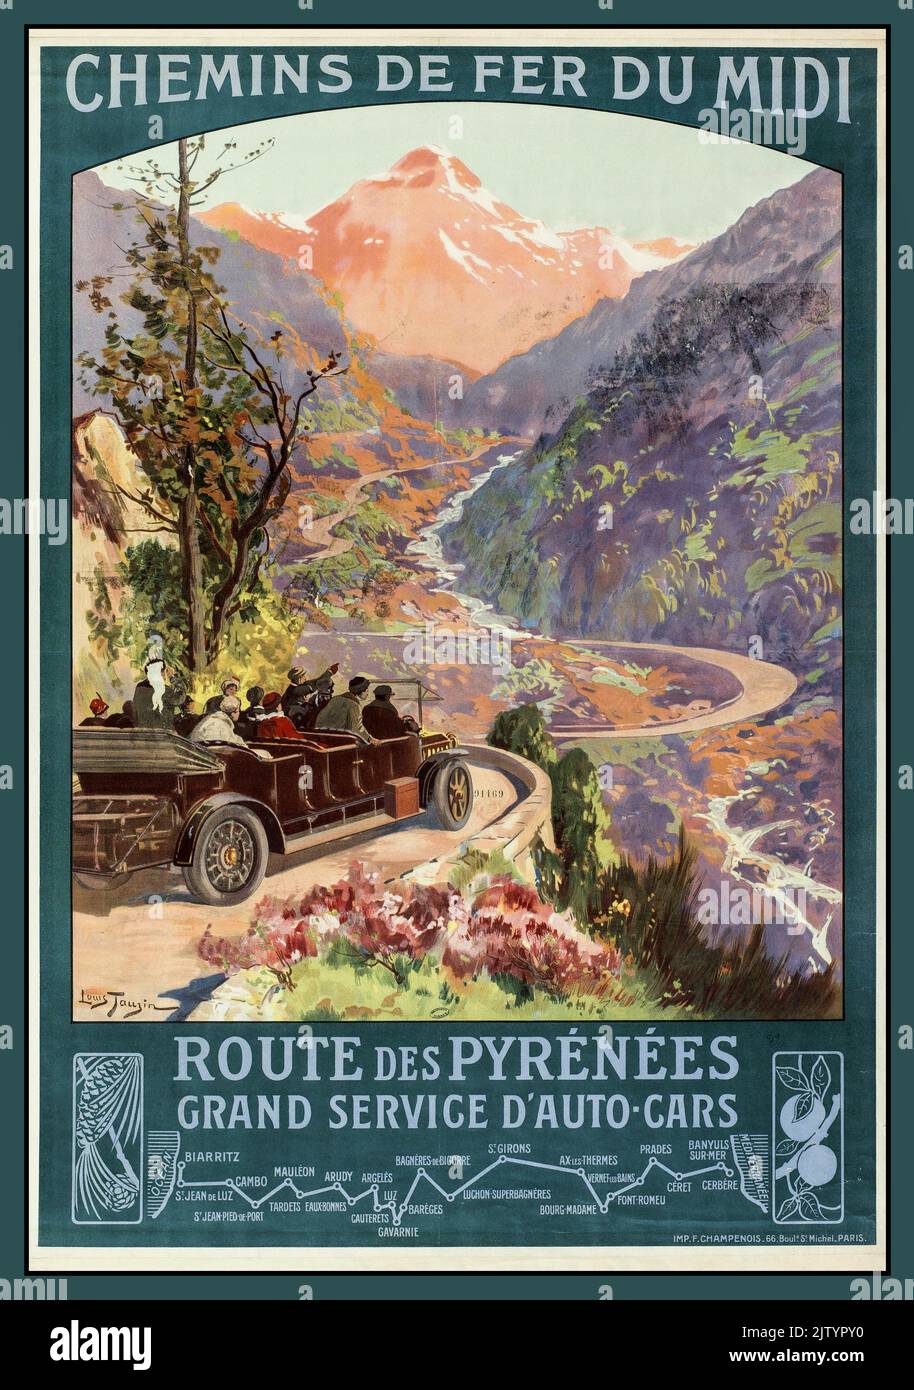 Vintage 1900s Cartel francés de viaje Chemin de fer du Midi - por Tauzin Louis (1910) Route des Pyrenees Grand Service d'Auto Cars Francia Foto de stock